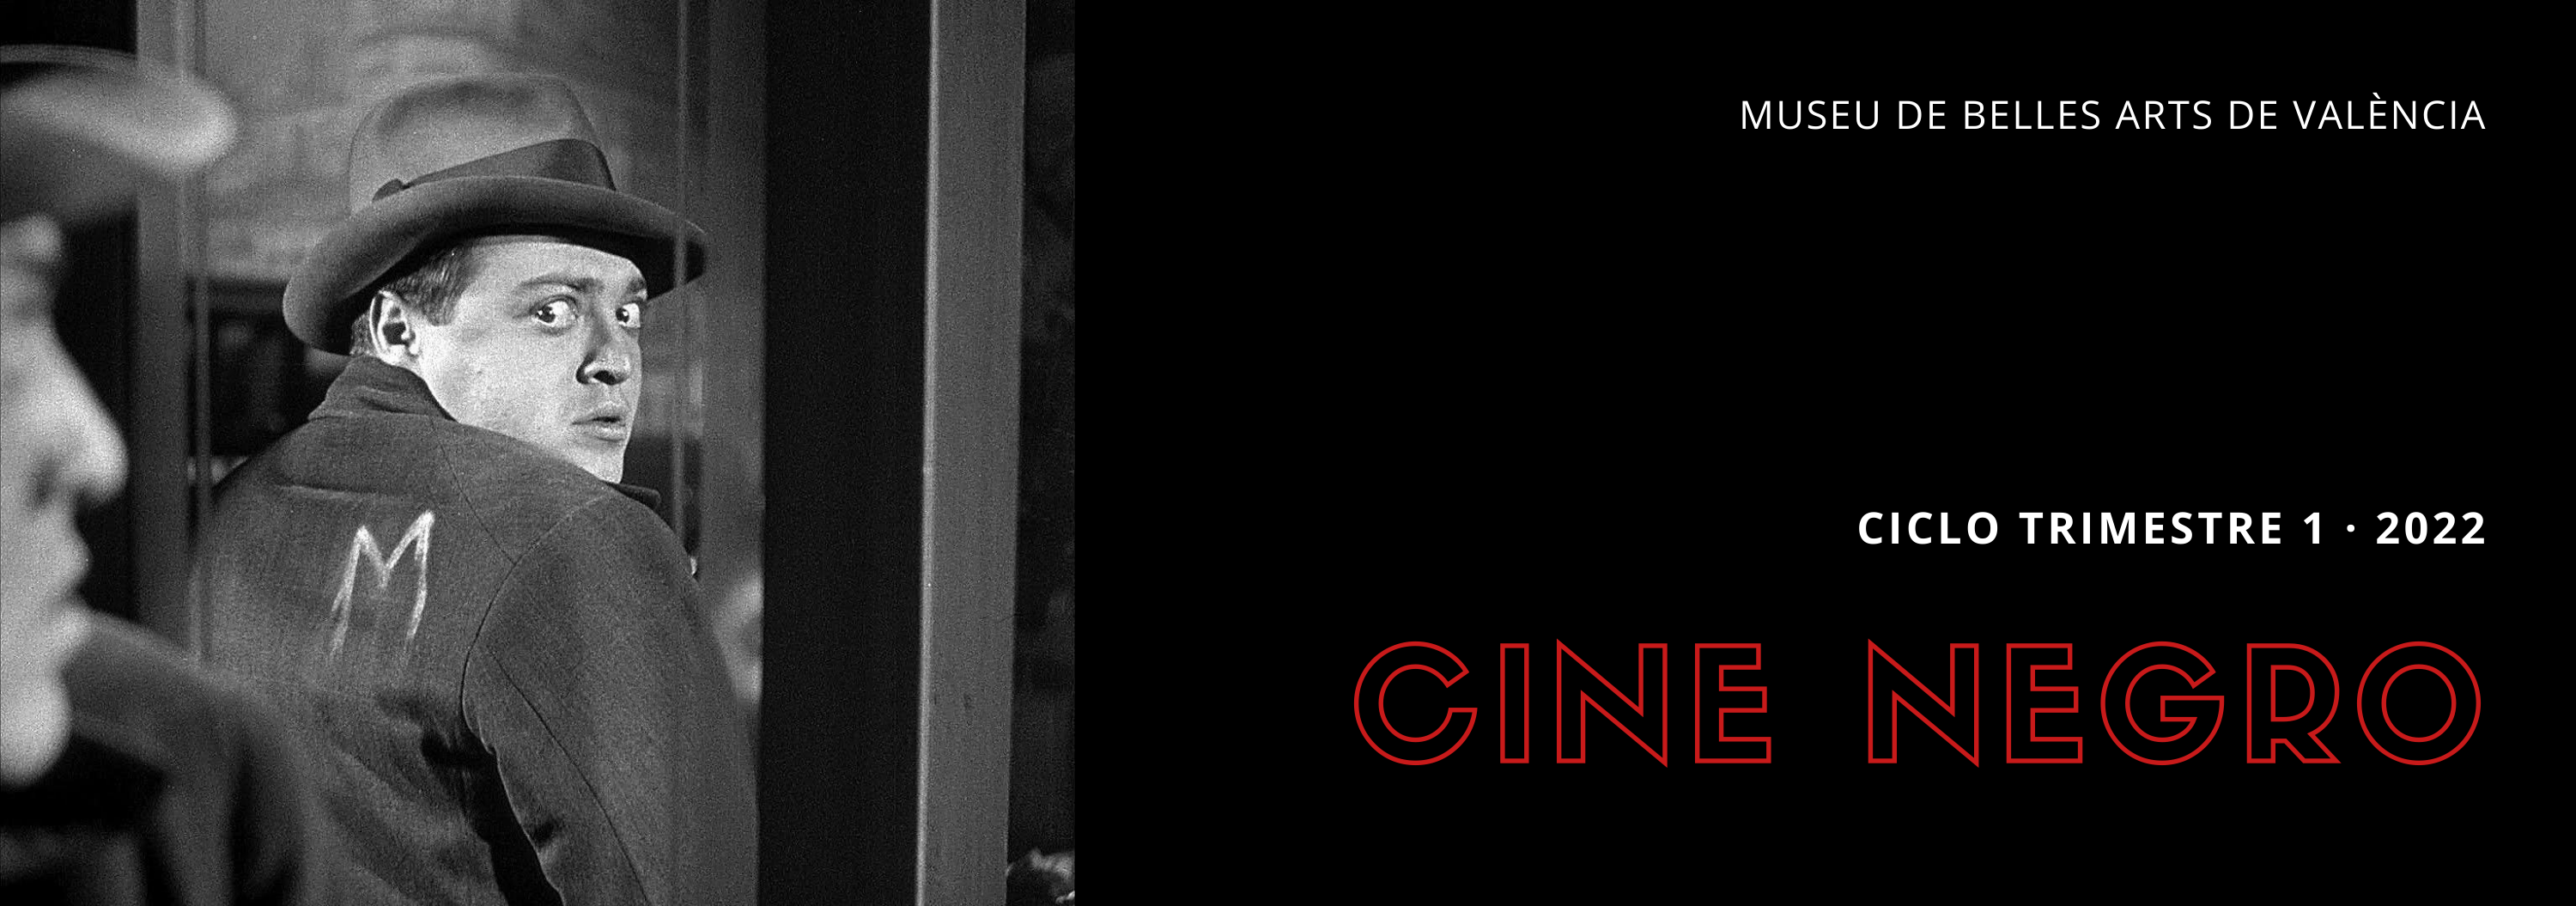 Cine negro | Ciclo de cine